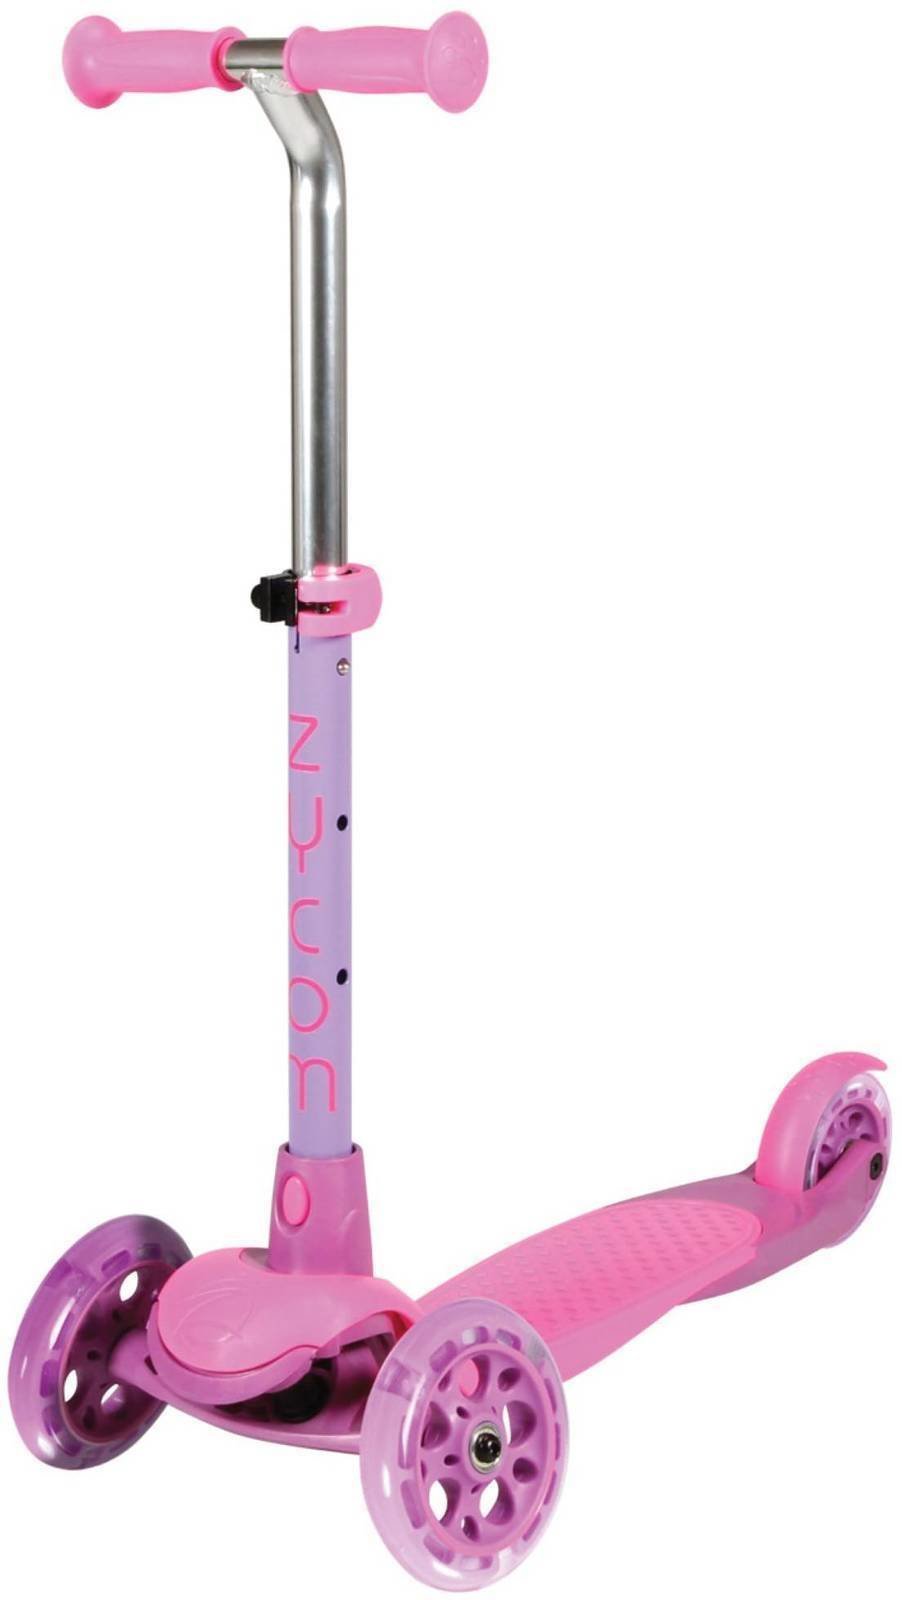 Hulajnoga dla dzieci / Tricykl Zycom Scooter Zing with Light Up Wheels purple/pink